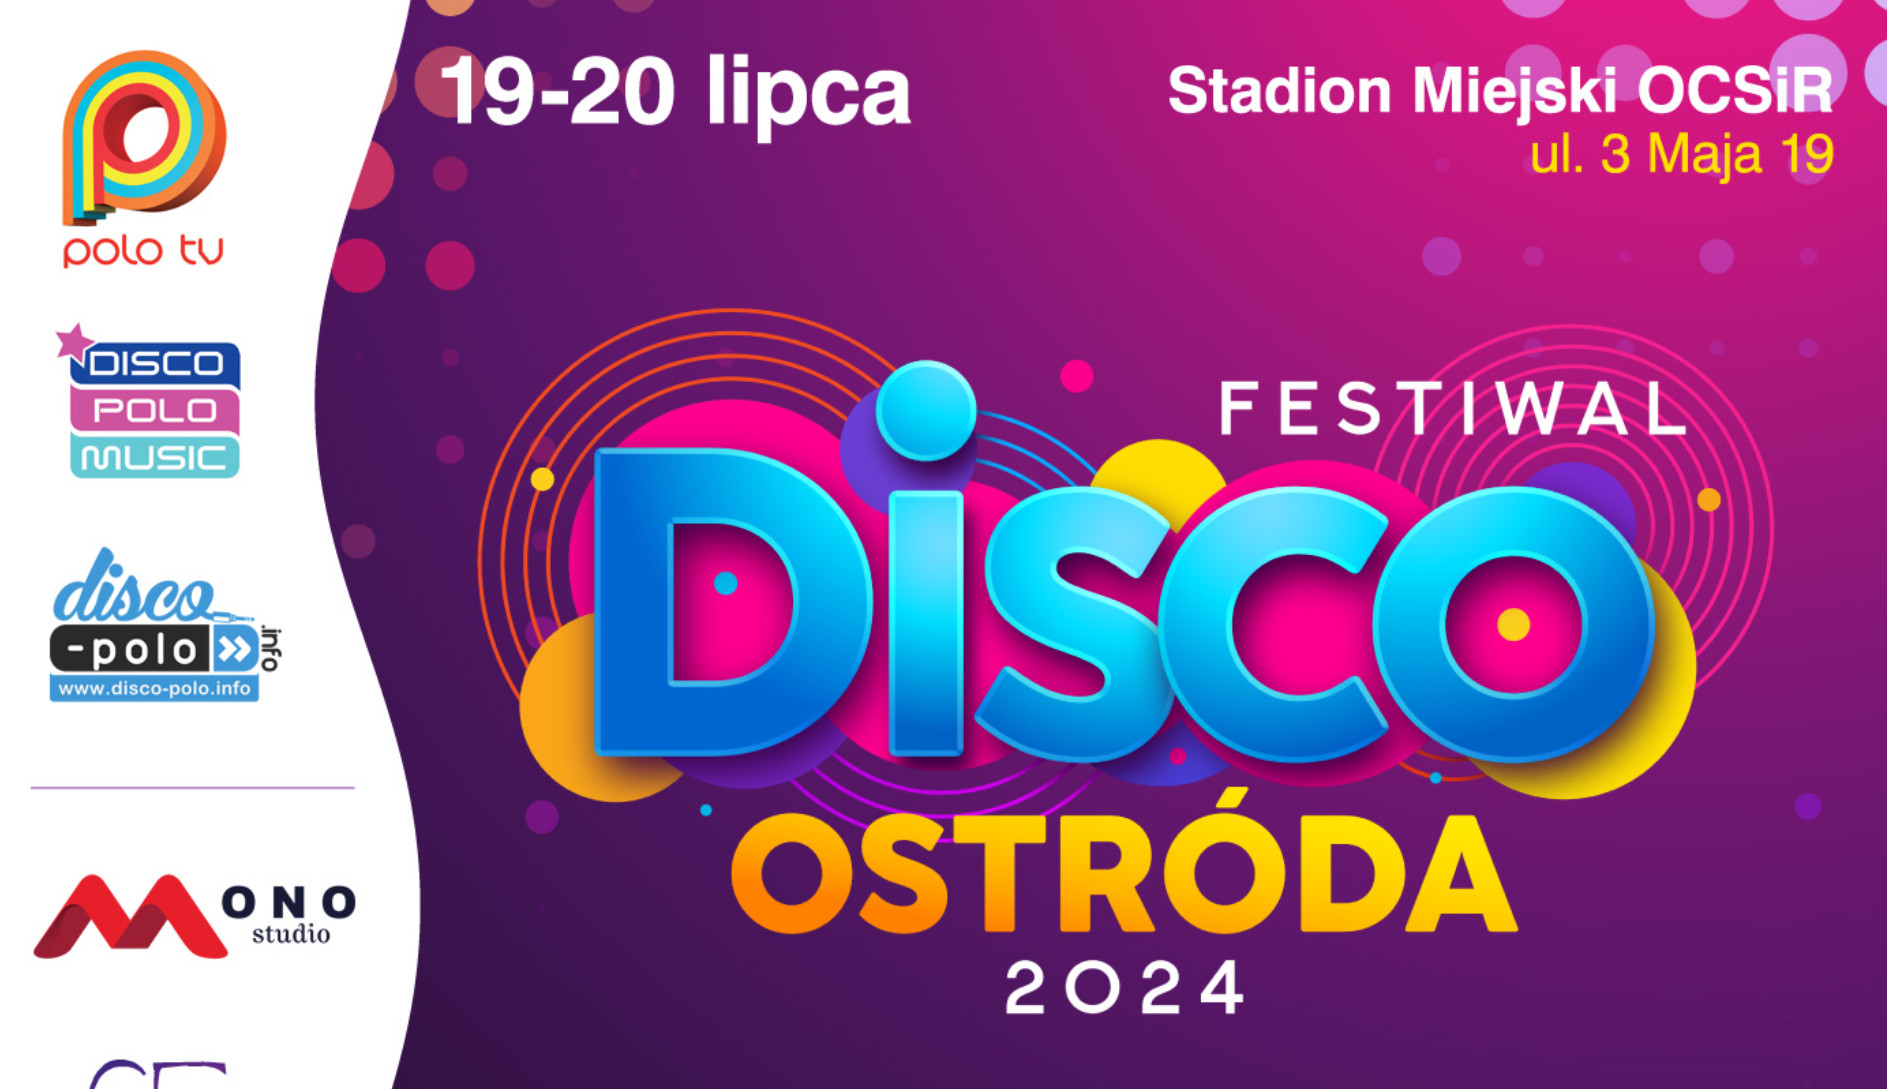 Ostróda ponownie stolicą disco polo! Festiwal Disco Ostróda 2024 zbliża się wielkimi krokami! Oto szczegóły! 